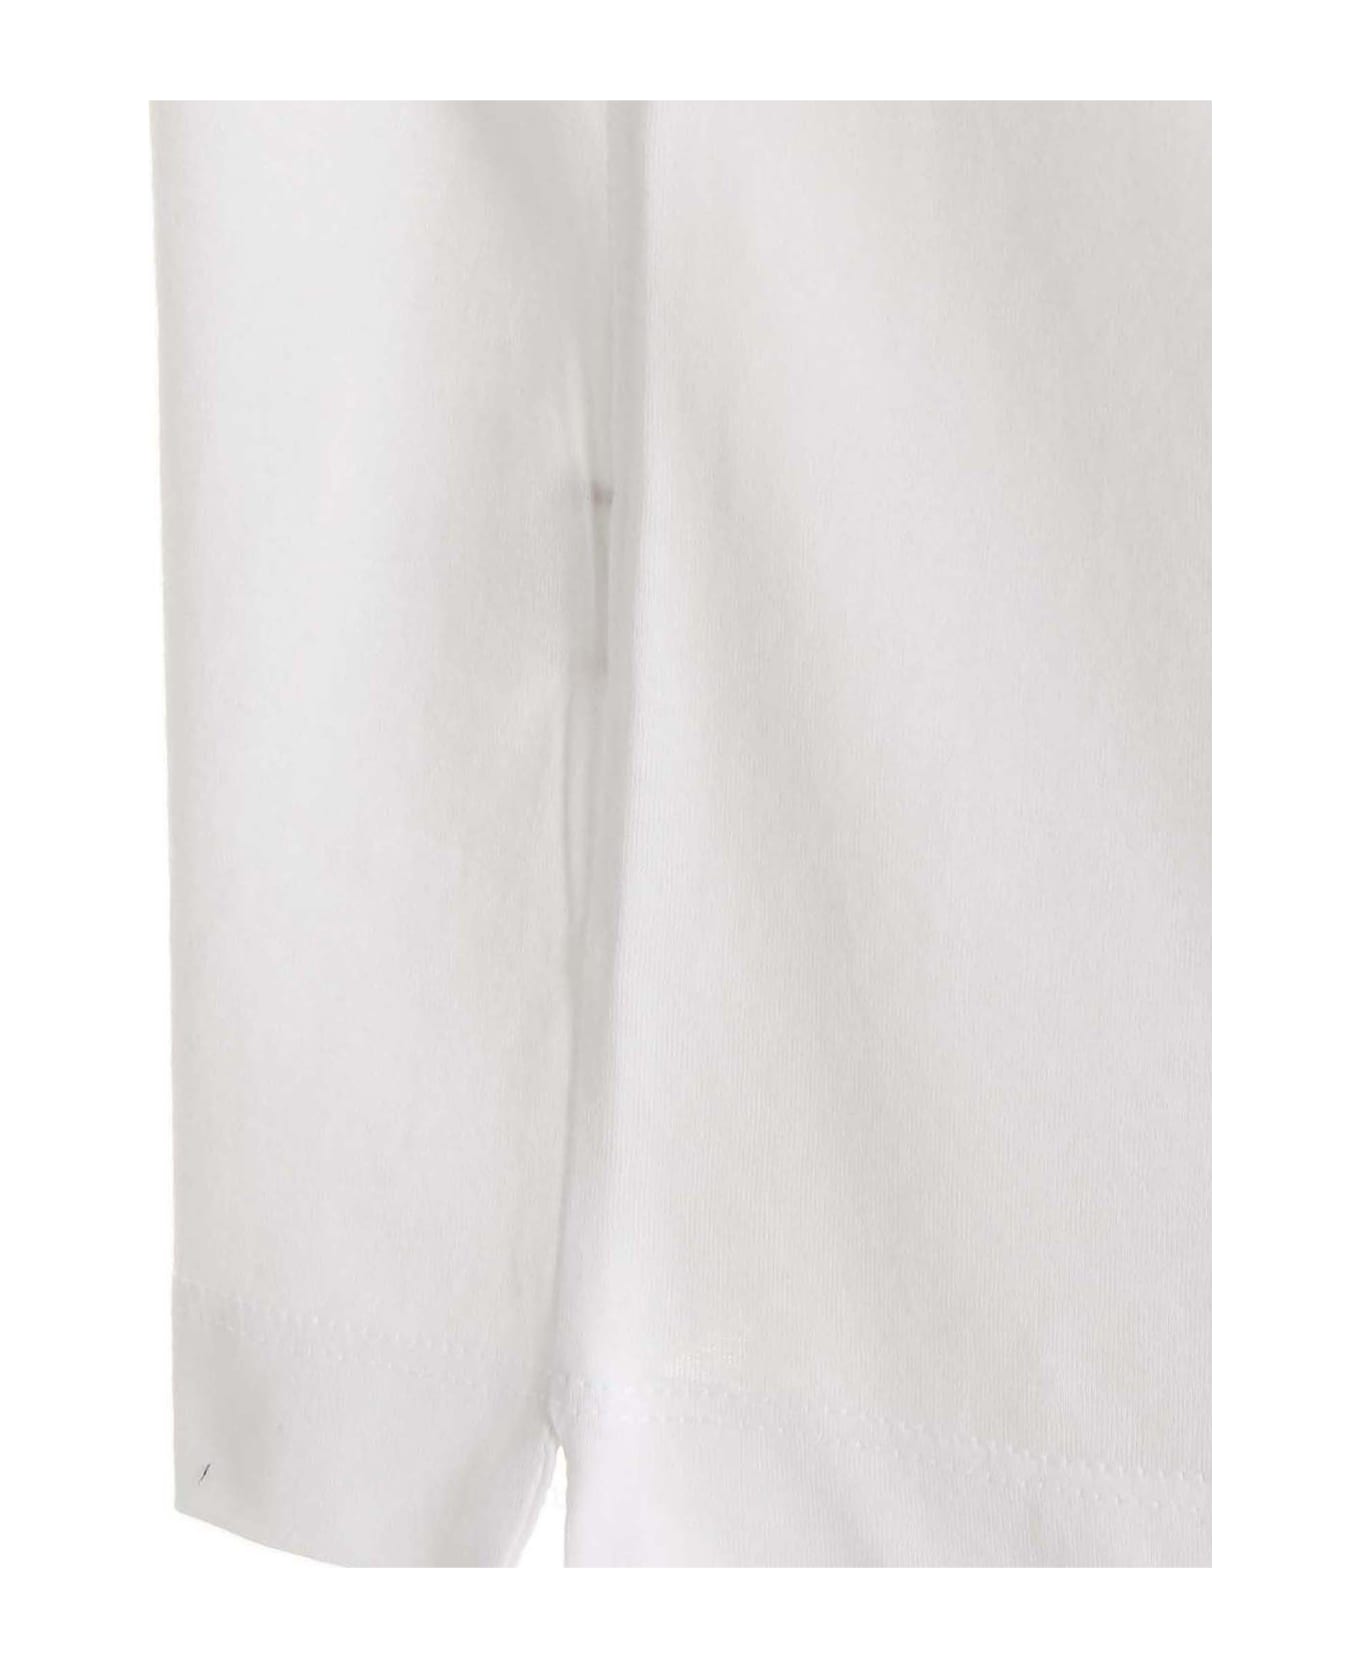 Ferrari 'label Pocket' Polo Shirt - White